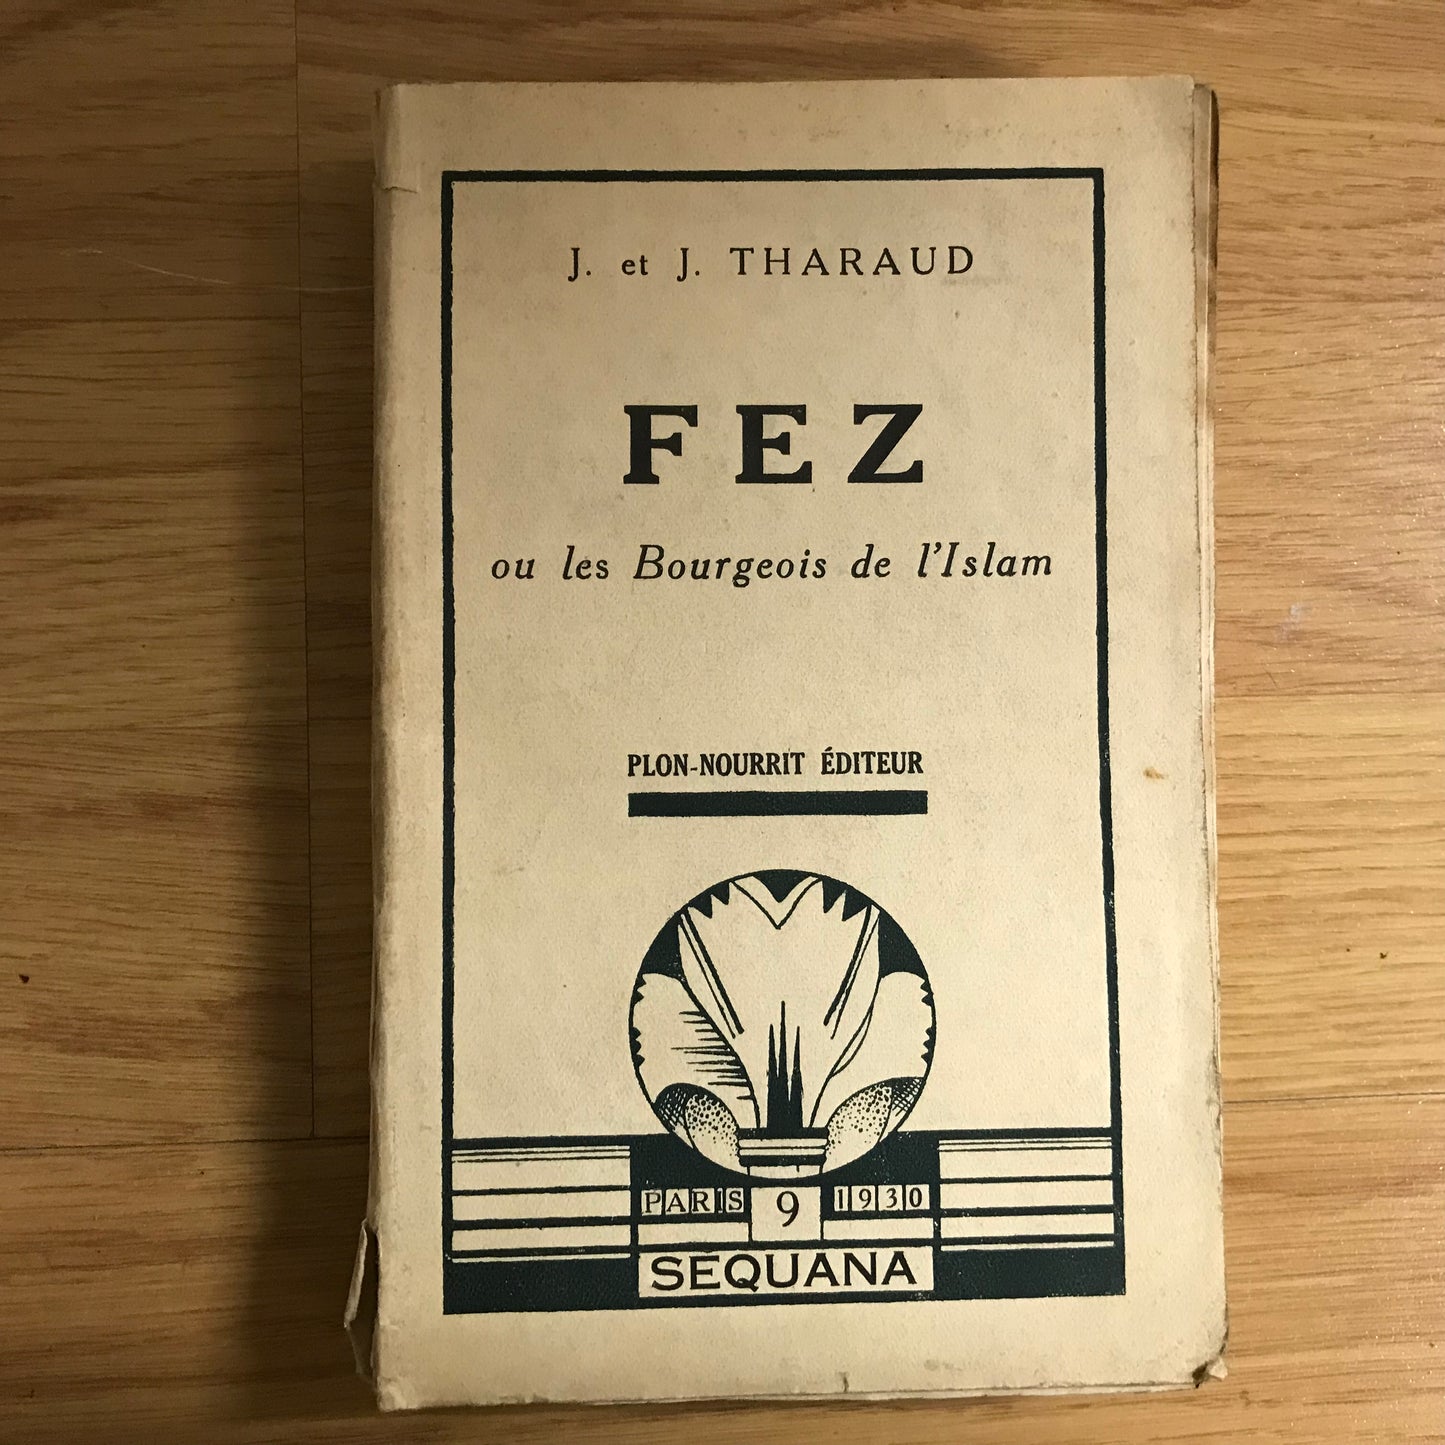 Tharaud, J. Et J. - Fez ou les bourgeois de l’Islam